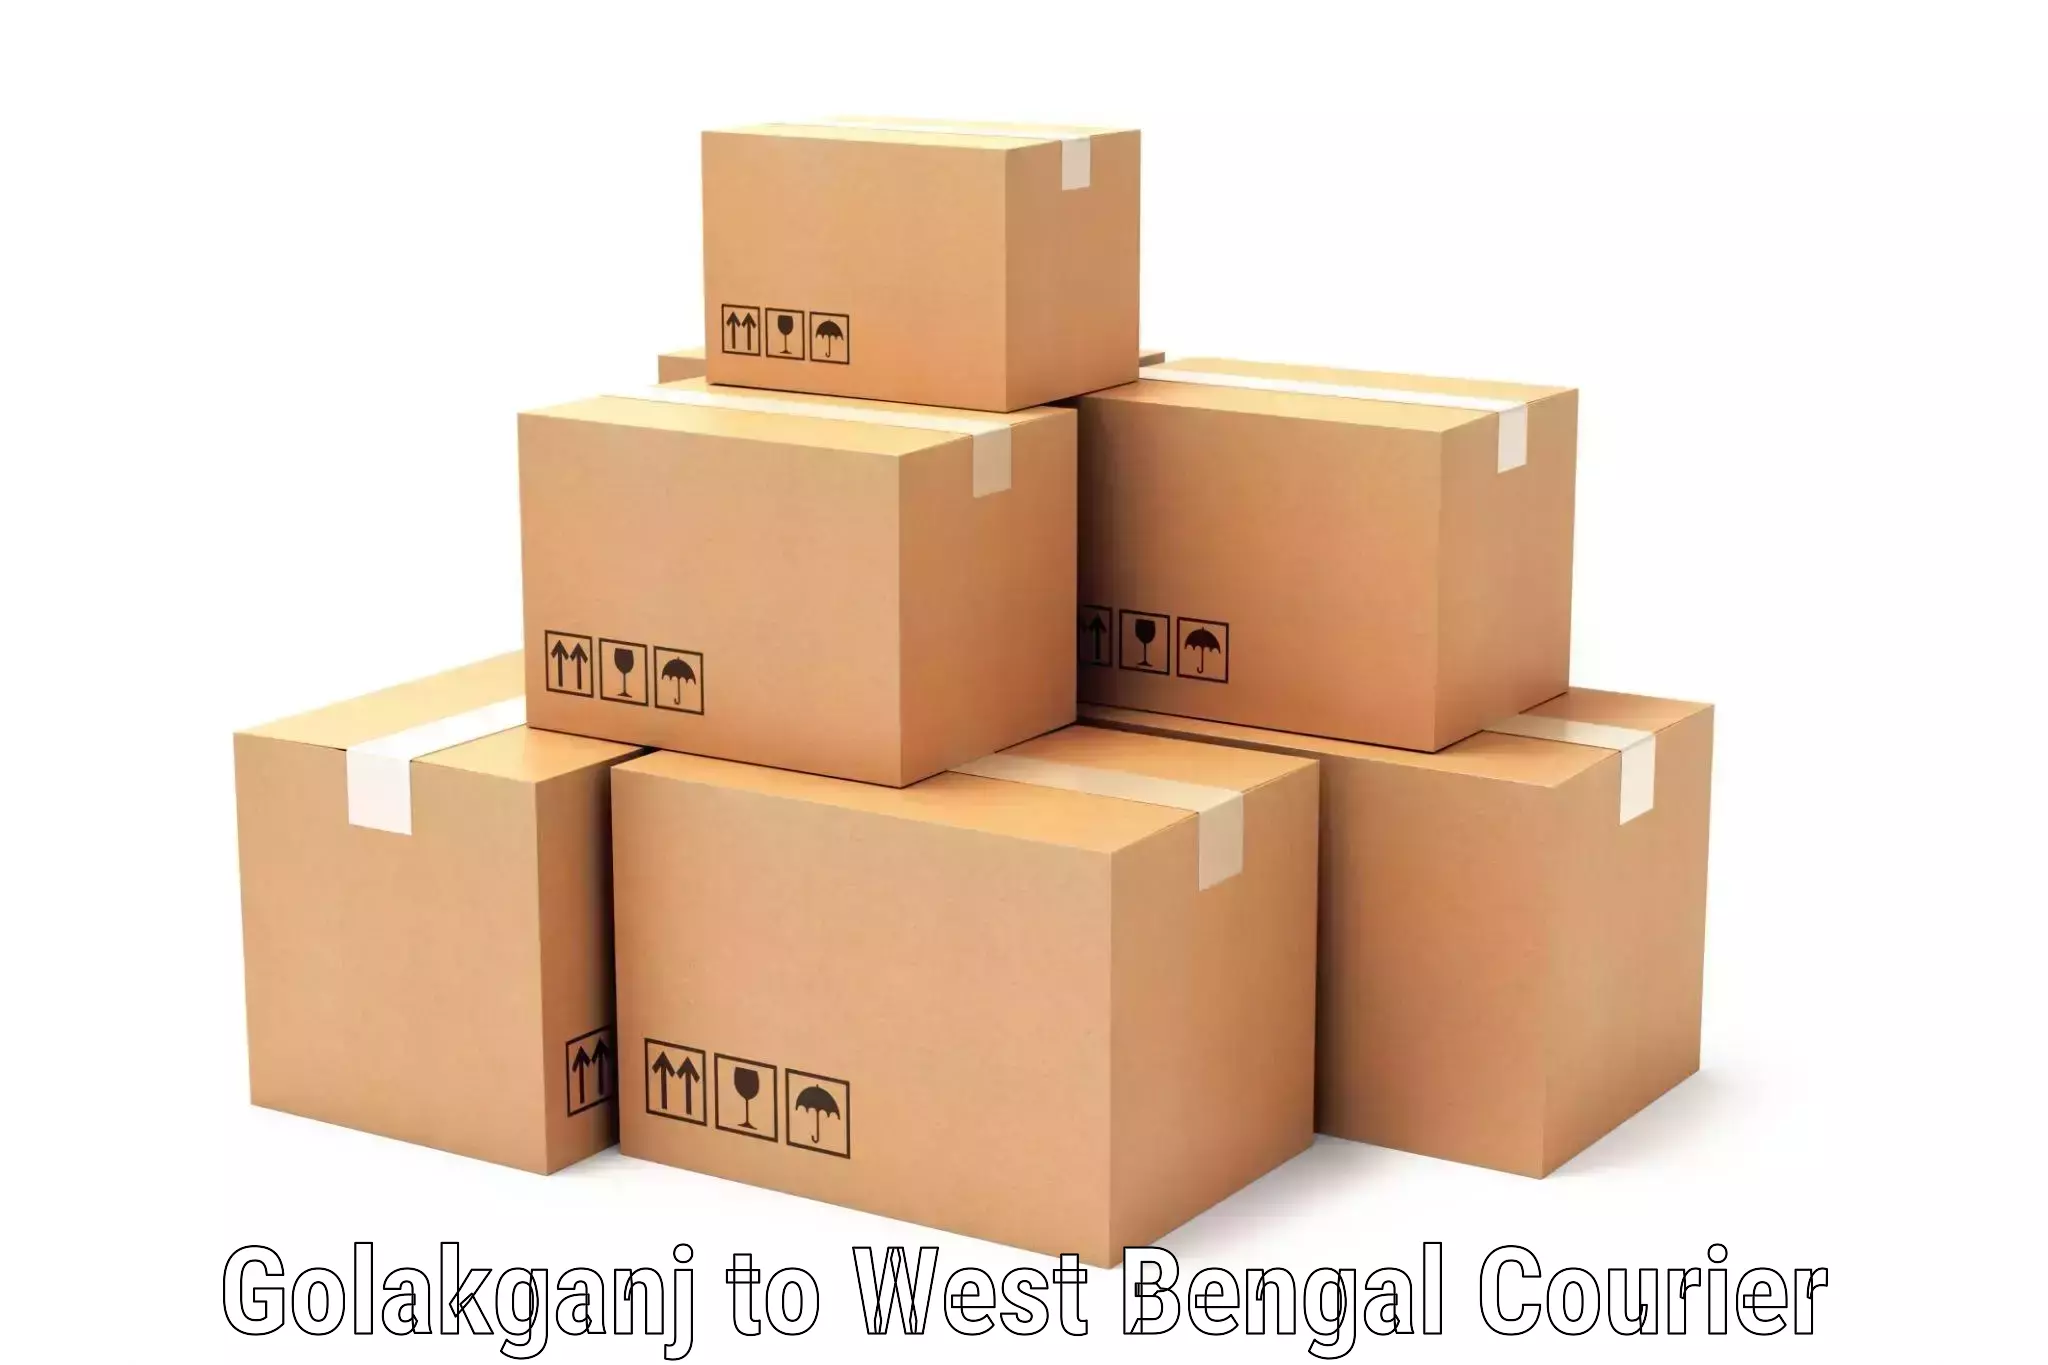 Efficient parcel service Golakganj to Bandel